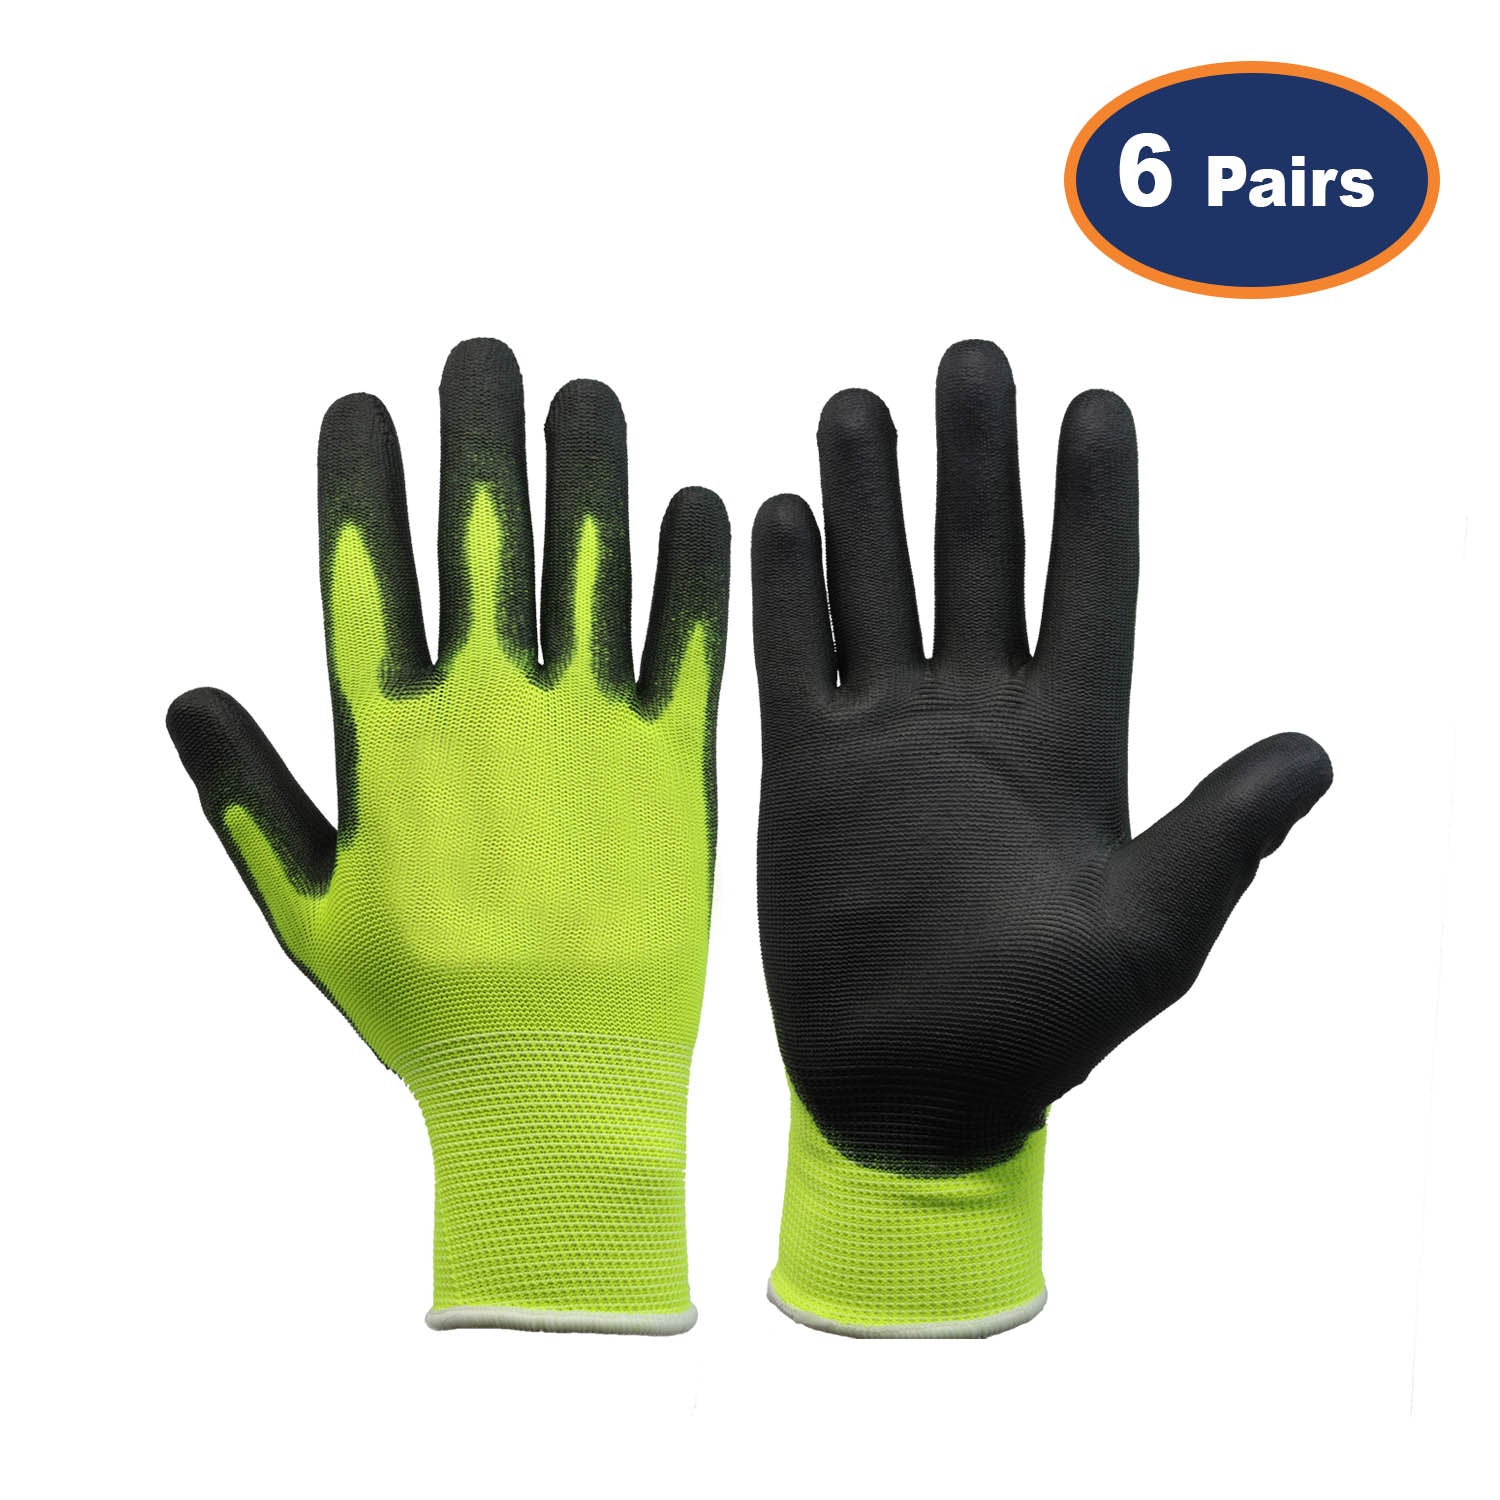 6Pcs XS Size PU Palm Yellow/Black Safety Glove